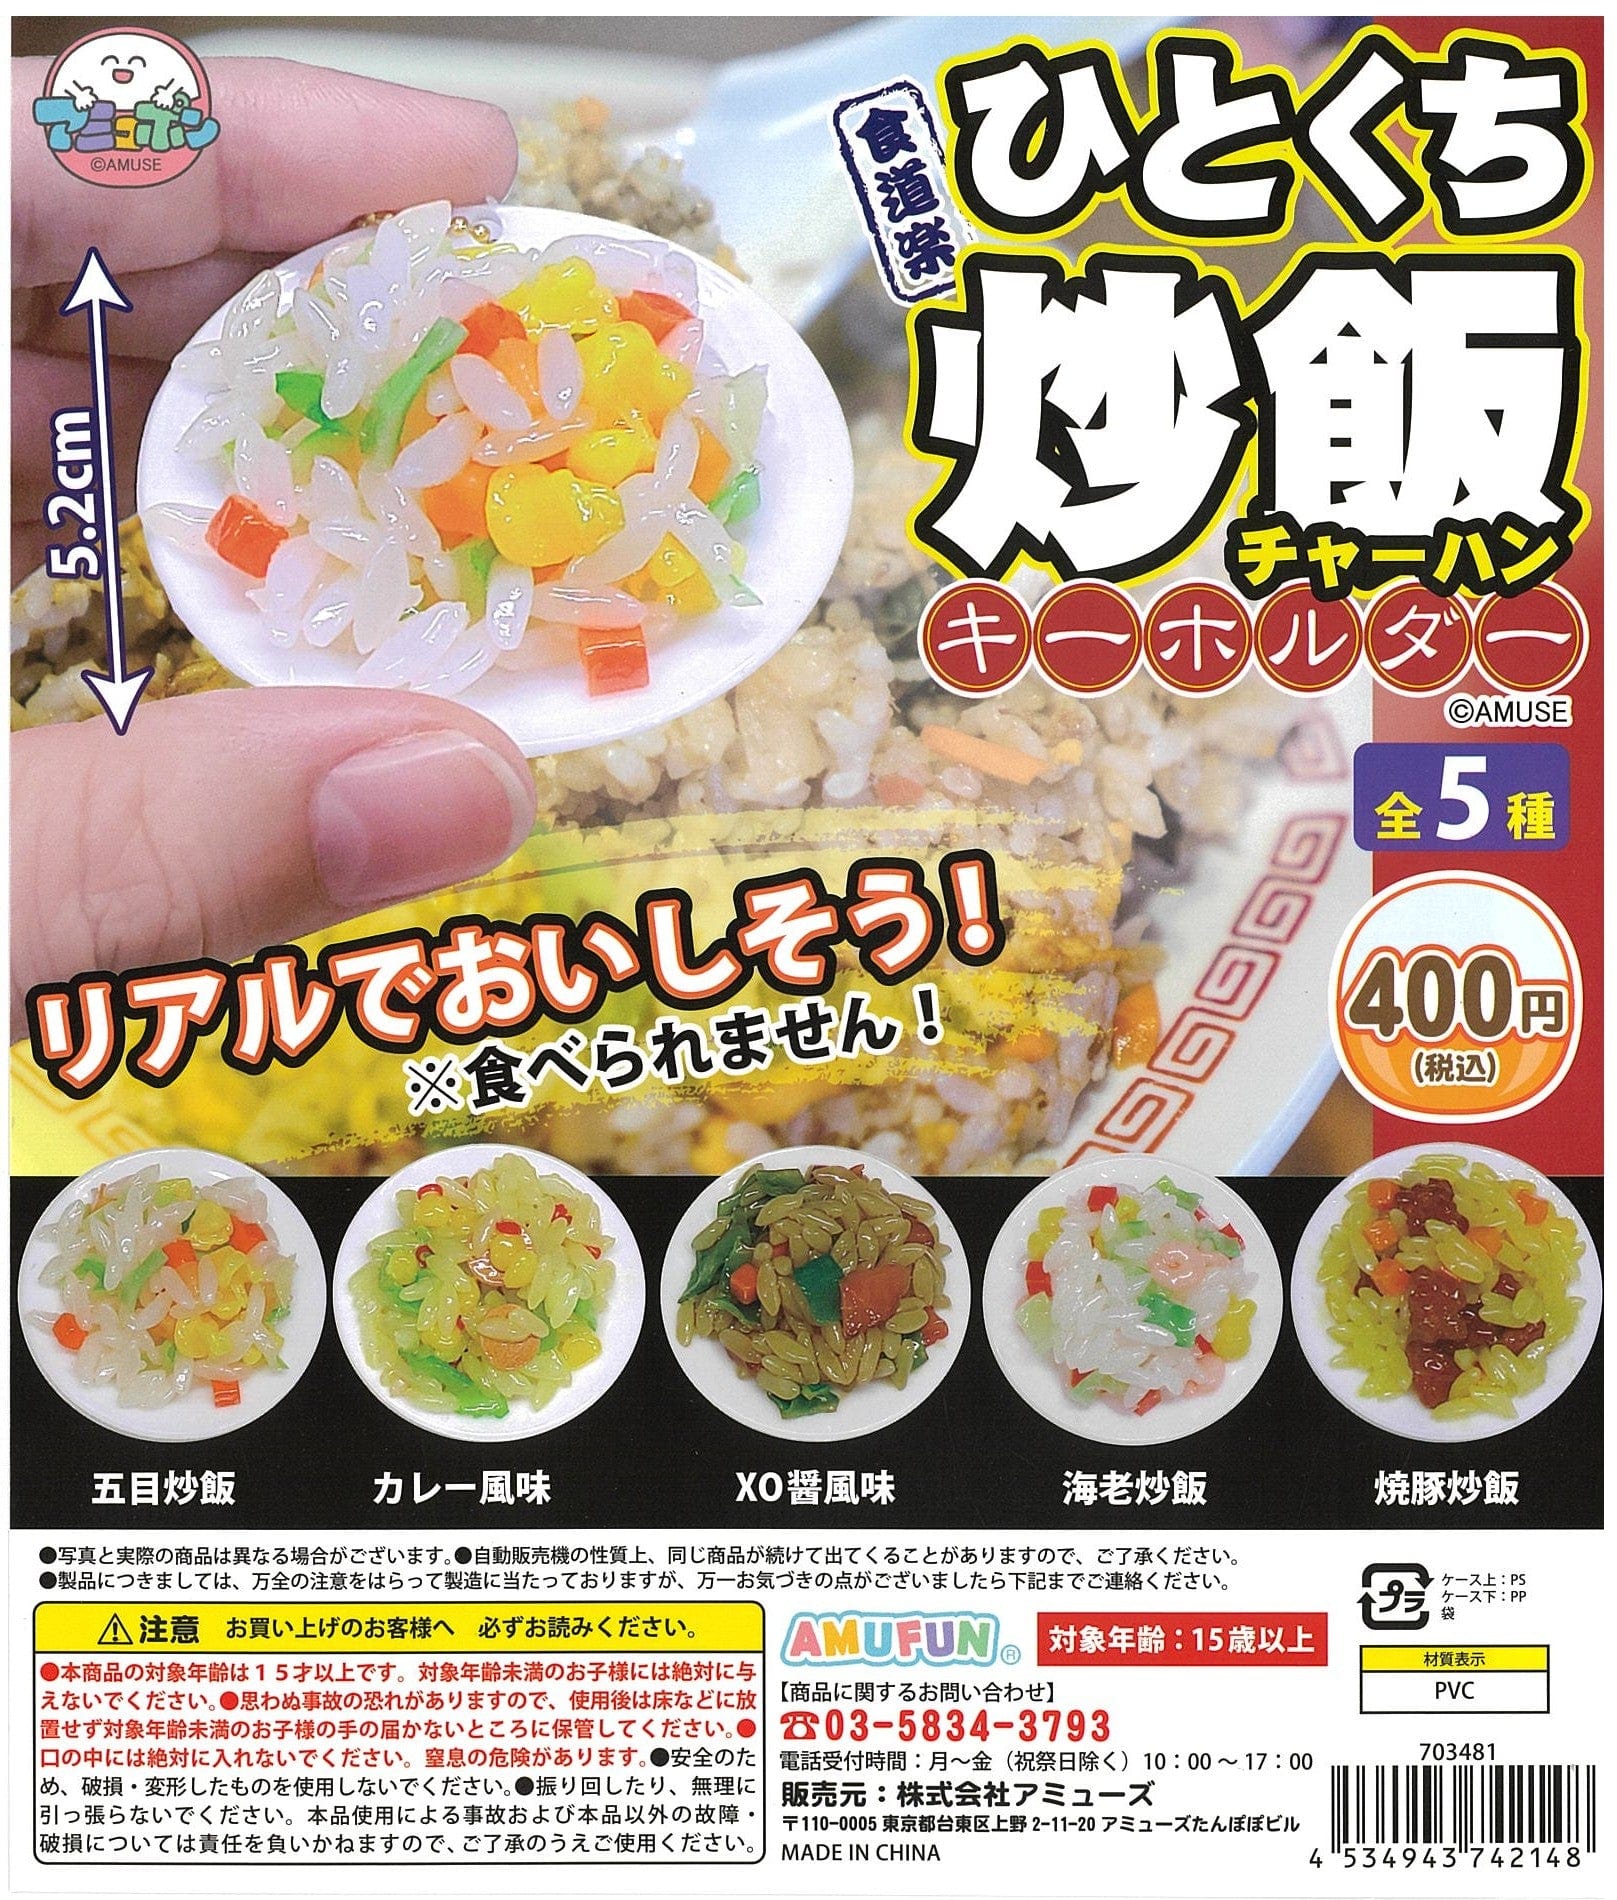 AMUSE CP2197 Kuidouraku One-bite Fried Rice Key Chain